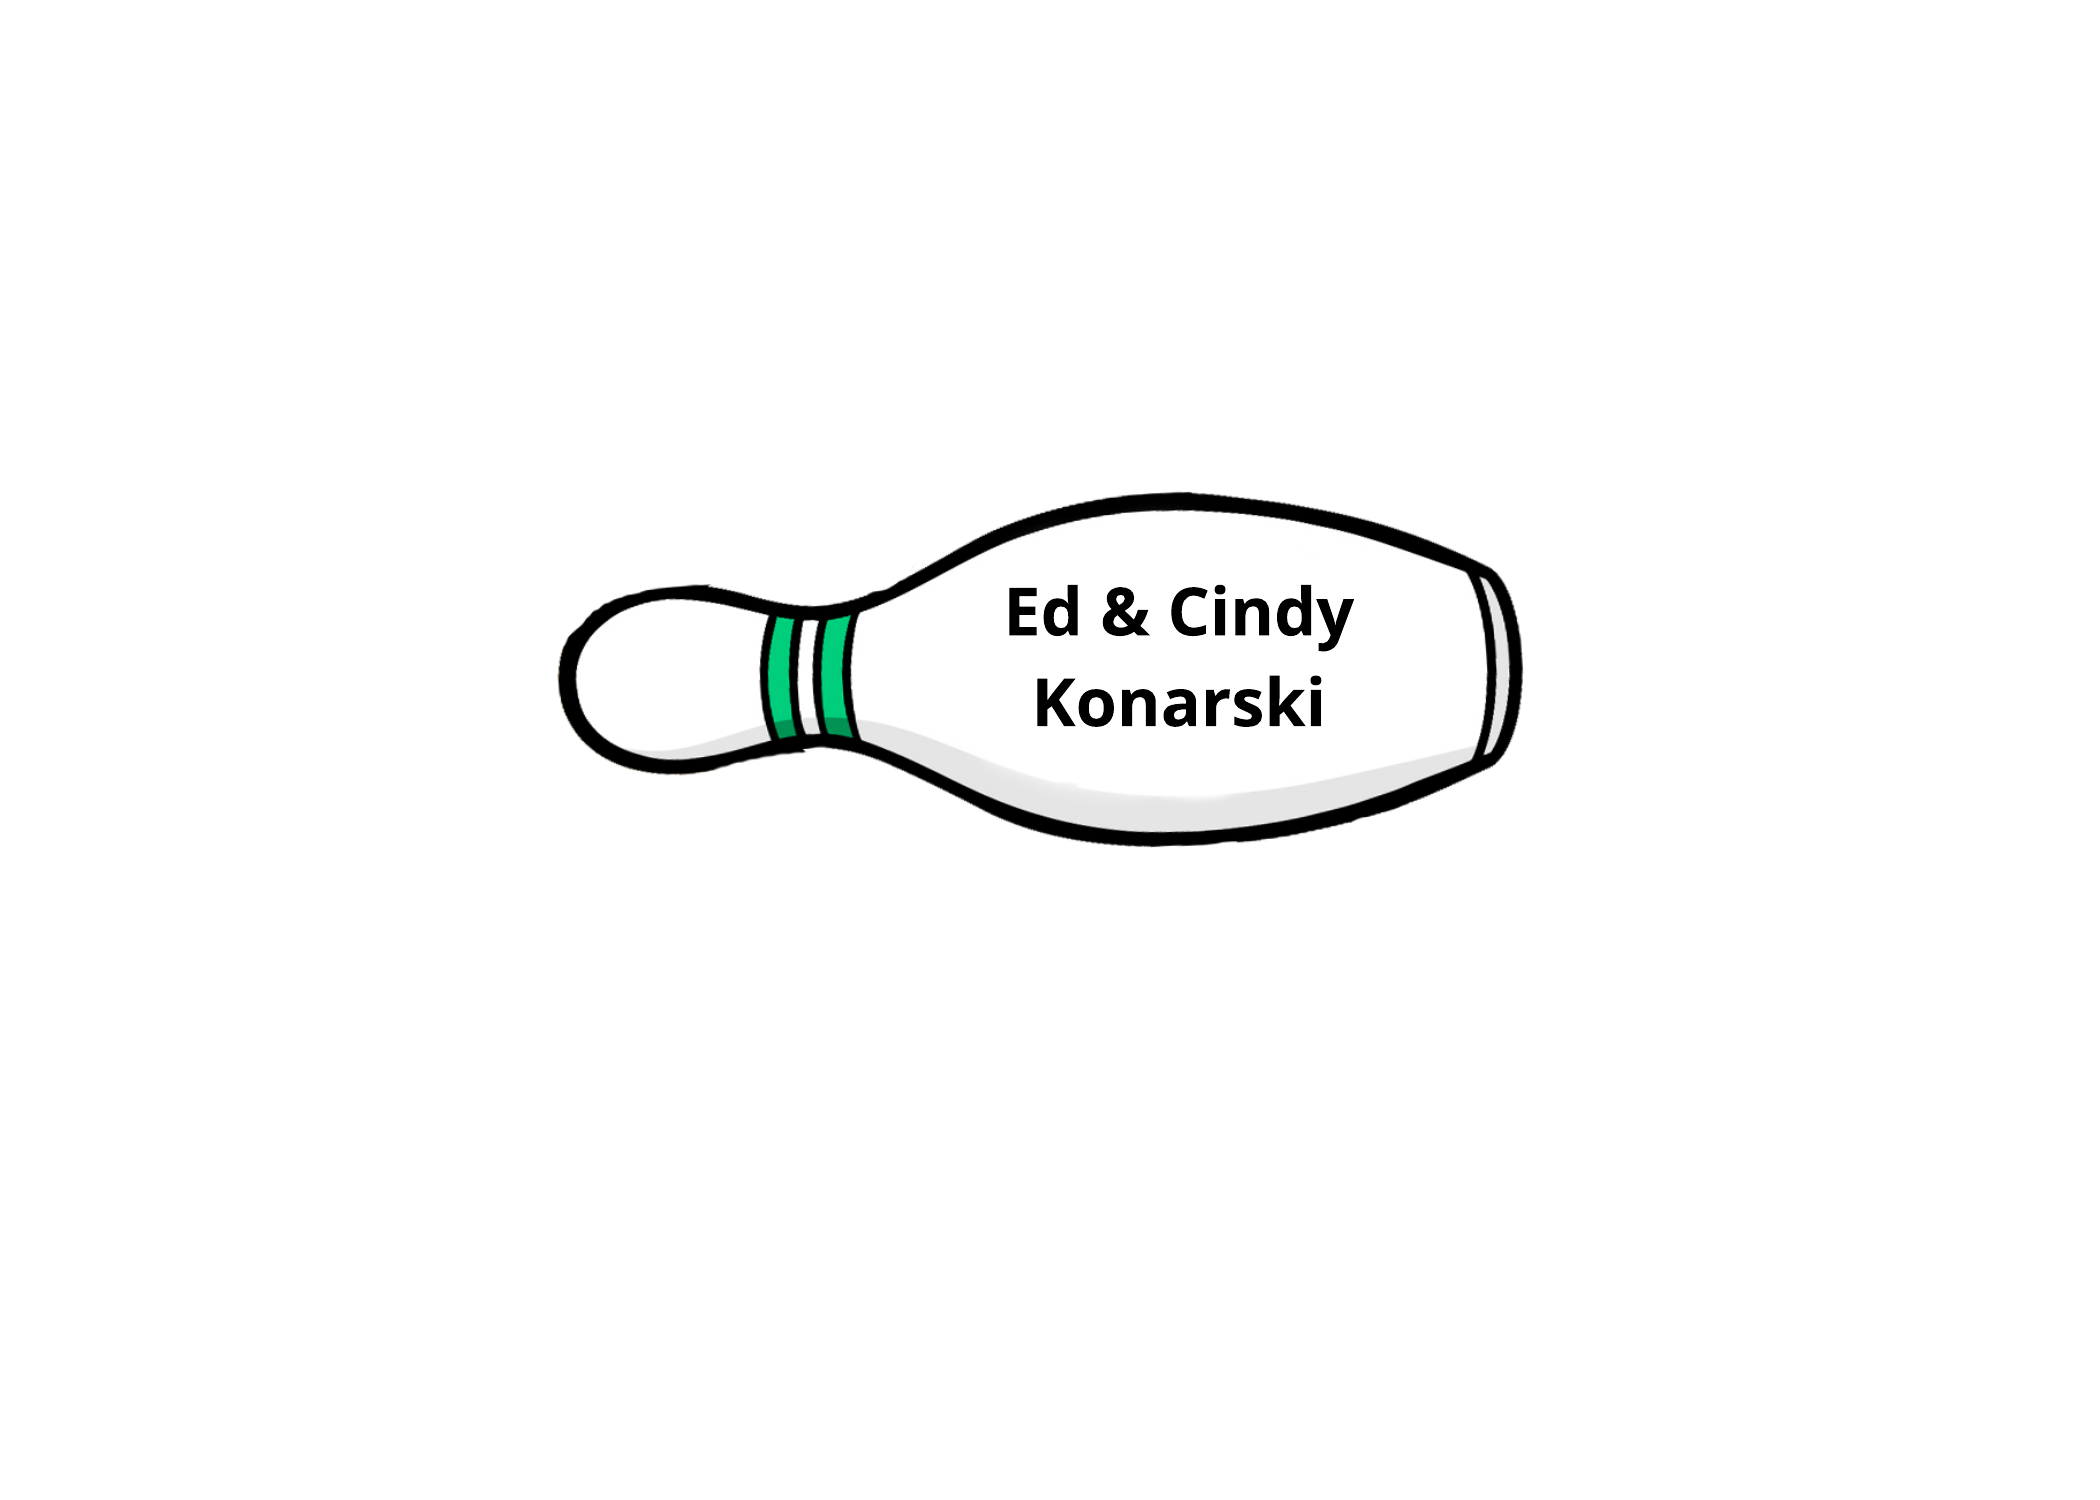 Ed and Cindy Konarski $500